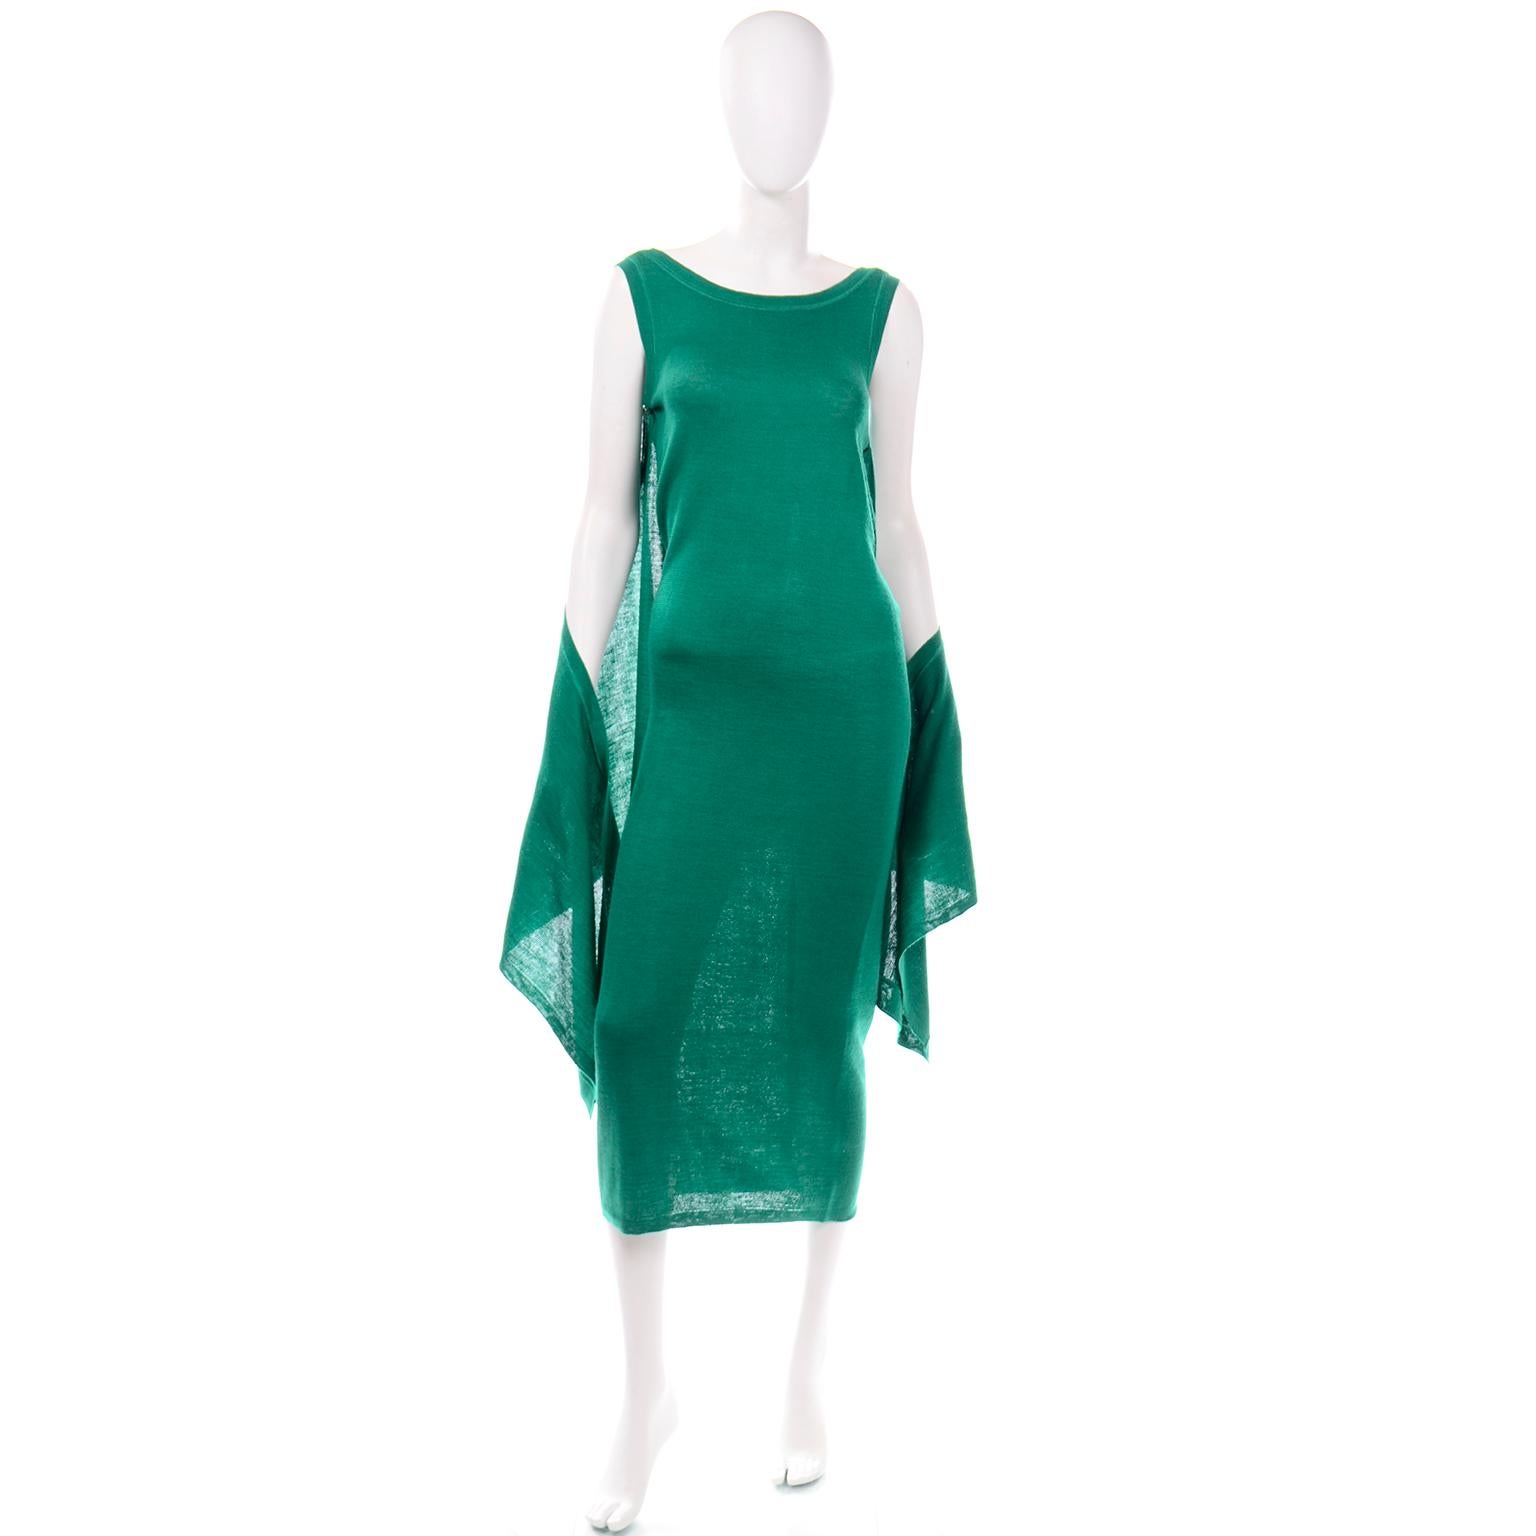 Dieses lustige grüne Stretch-Strickkleid von Angelo Tarlazzi ist so unglaublich vielseitig! Das Kleid ist aus smaragdgrünem Stretch-Strick mit gerippten Rändern, ähnlich wie bei einem T-Shirt, und wir lieben vor allem den drapierten Stoffeinsatz,